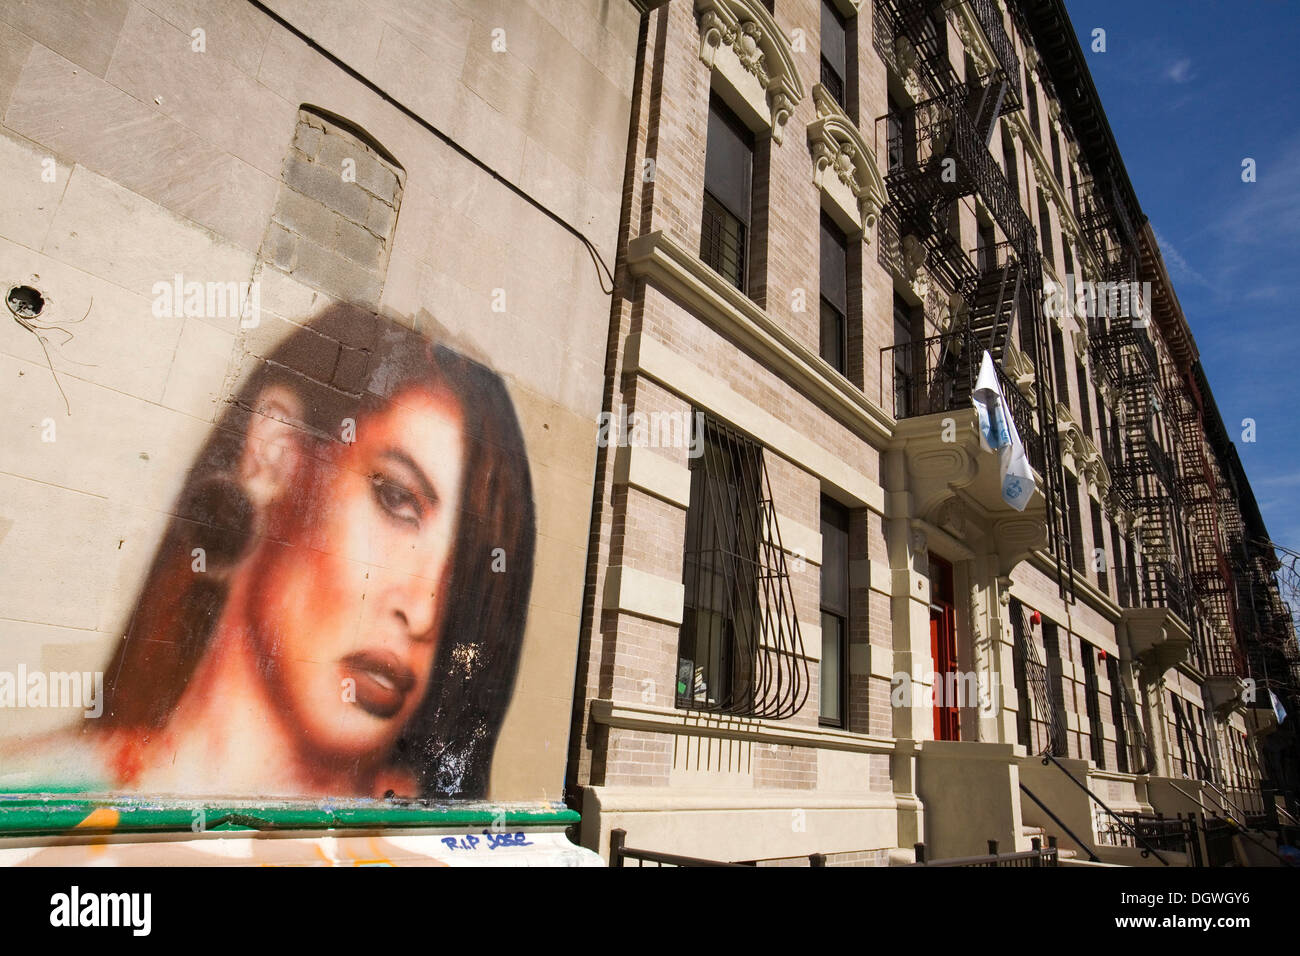 Les graffitis, portrait de la chanteuse Aaliyah tardive à Harlem, West 147e Street, New York City, New York, USA, Amérique du Nord Banque D'Images